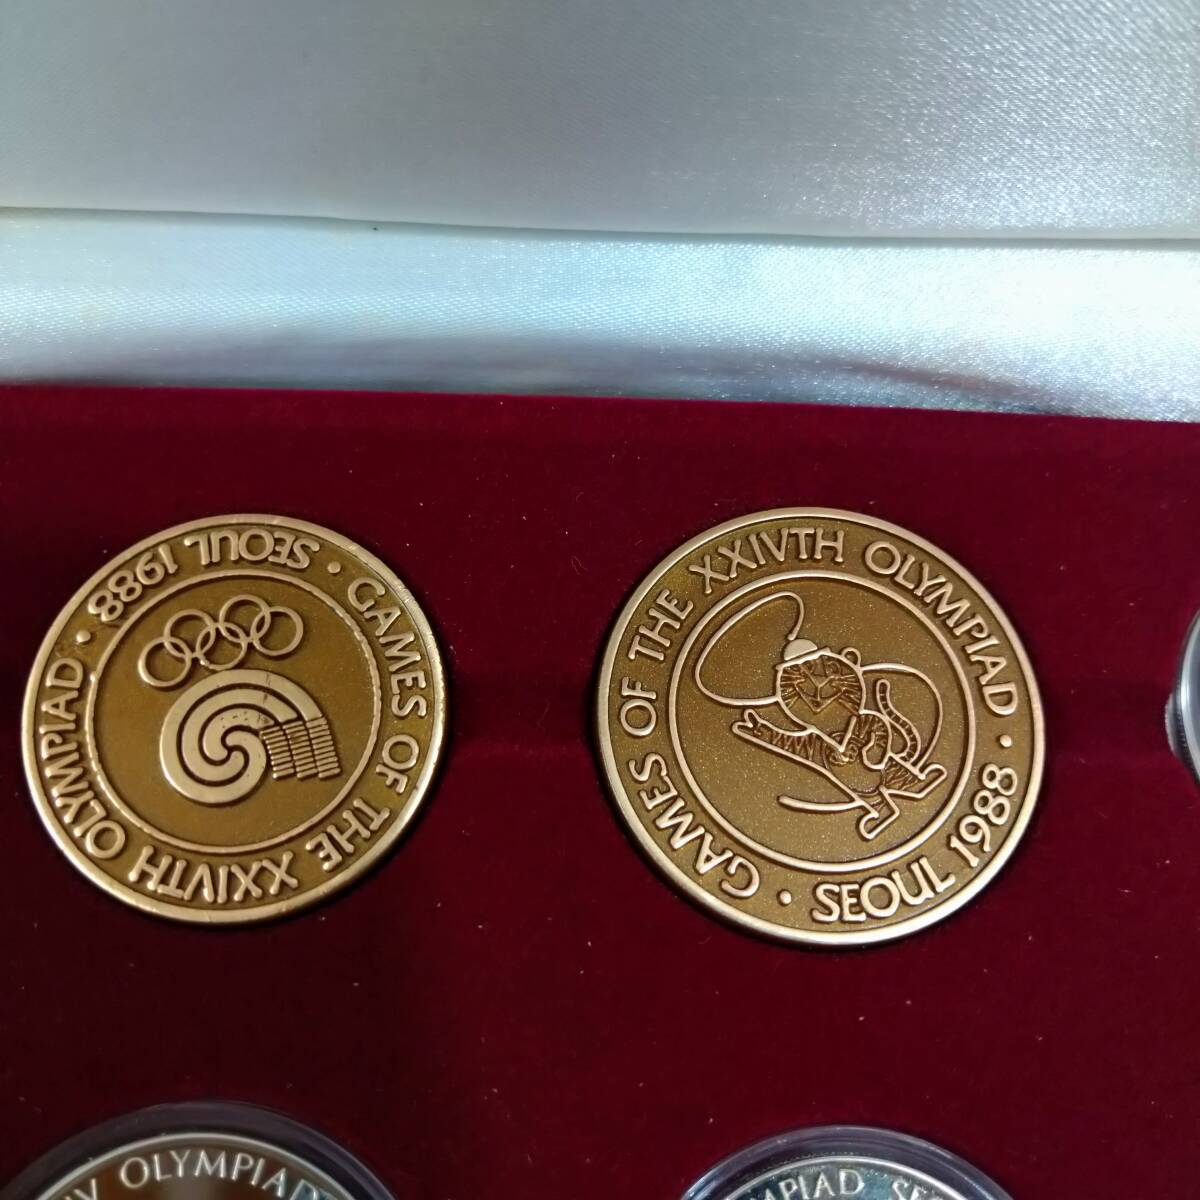 [ редкий ] душа Olympic 1988 год SEOUL памятная монета 2000won3 листов 1000won3 листов итого 6 шт. комплект кейс входить [ Корея монета деньги комплект ]